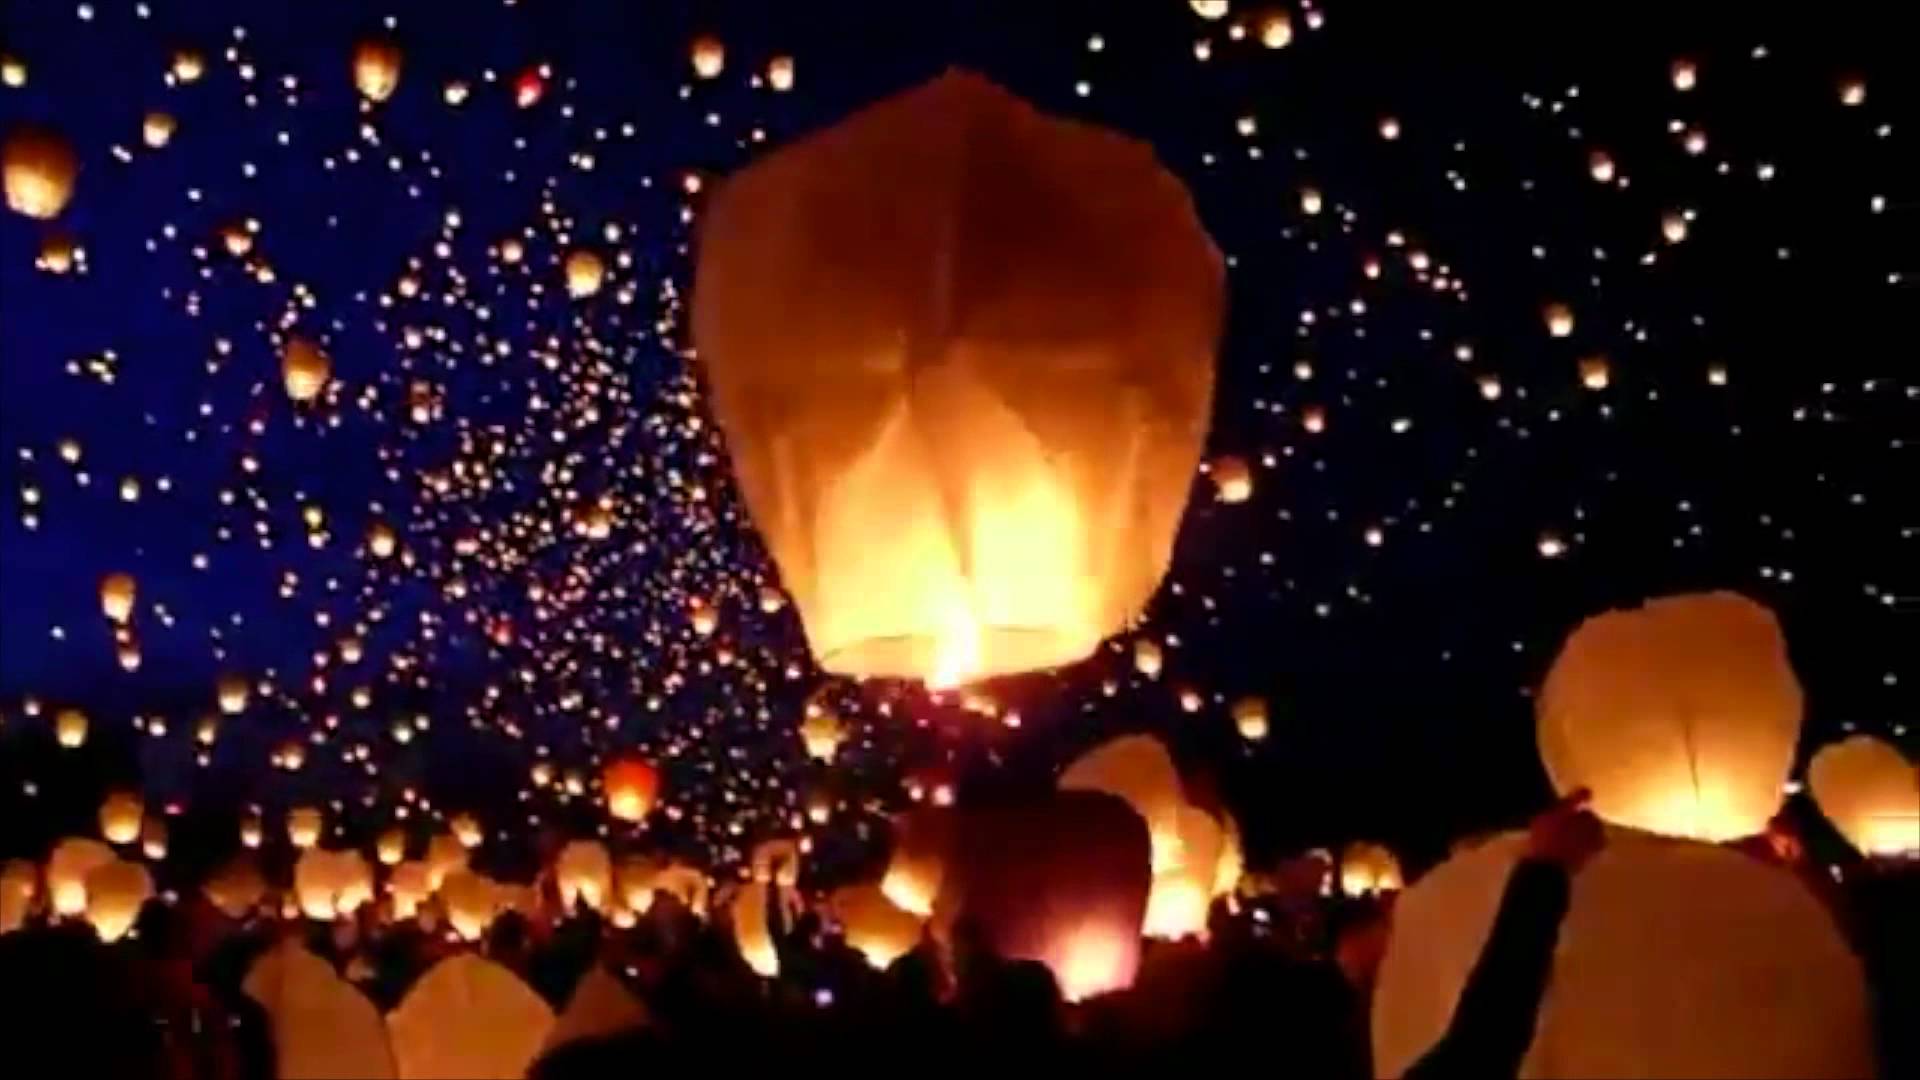 sky lantern festival - YouTube